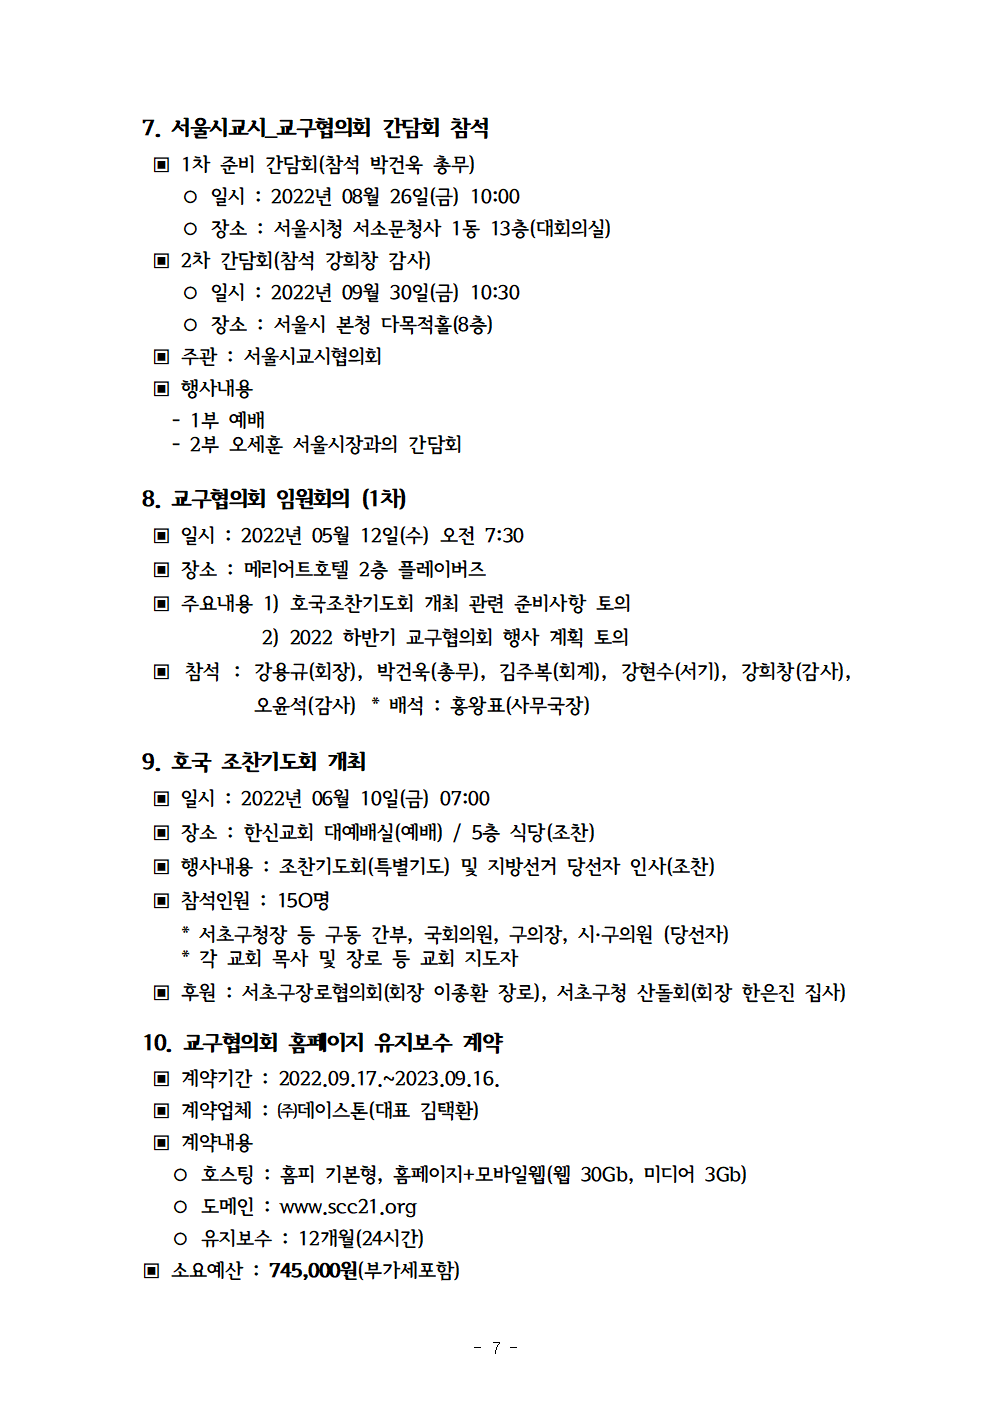 2022회기 서초교구협의회 정기총회자료(12.13.)_홈페이지008.png